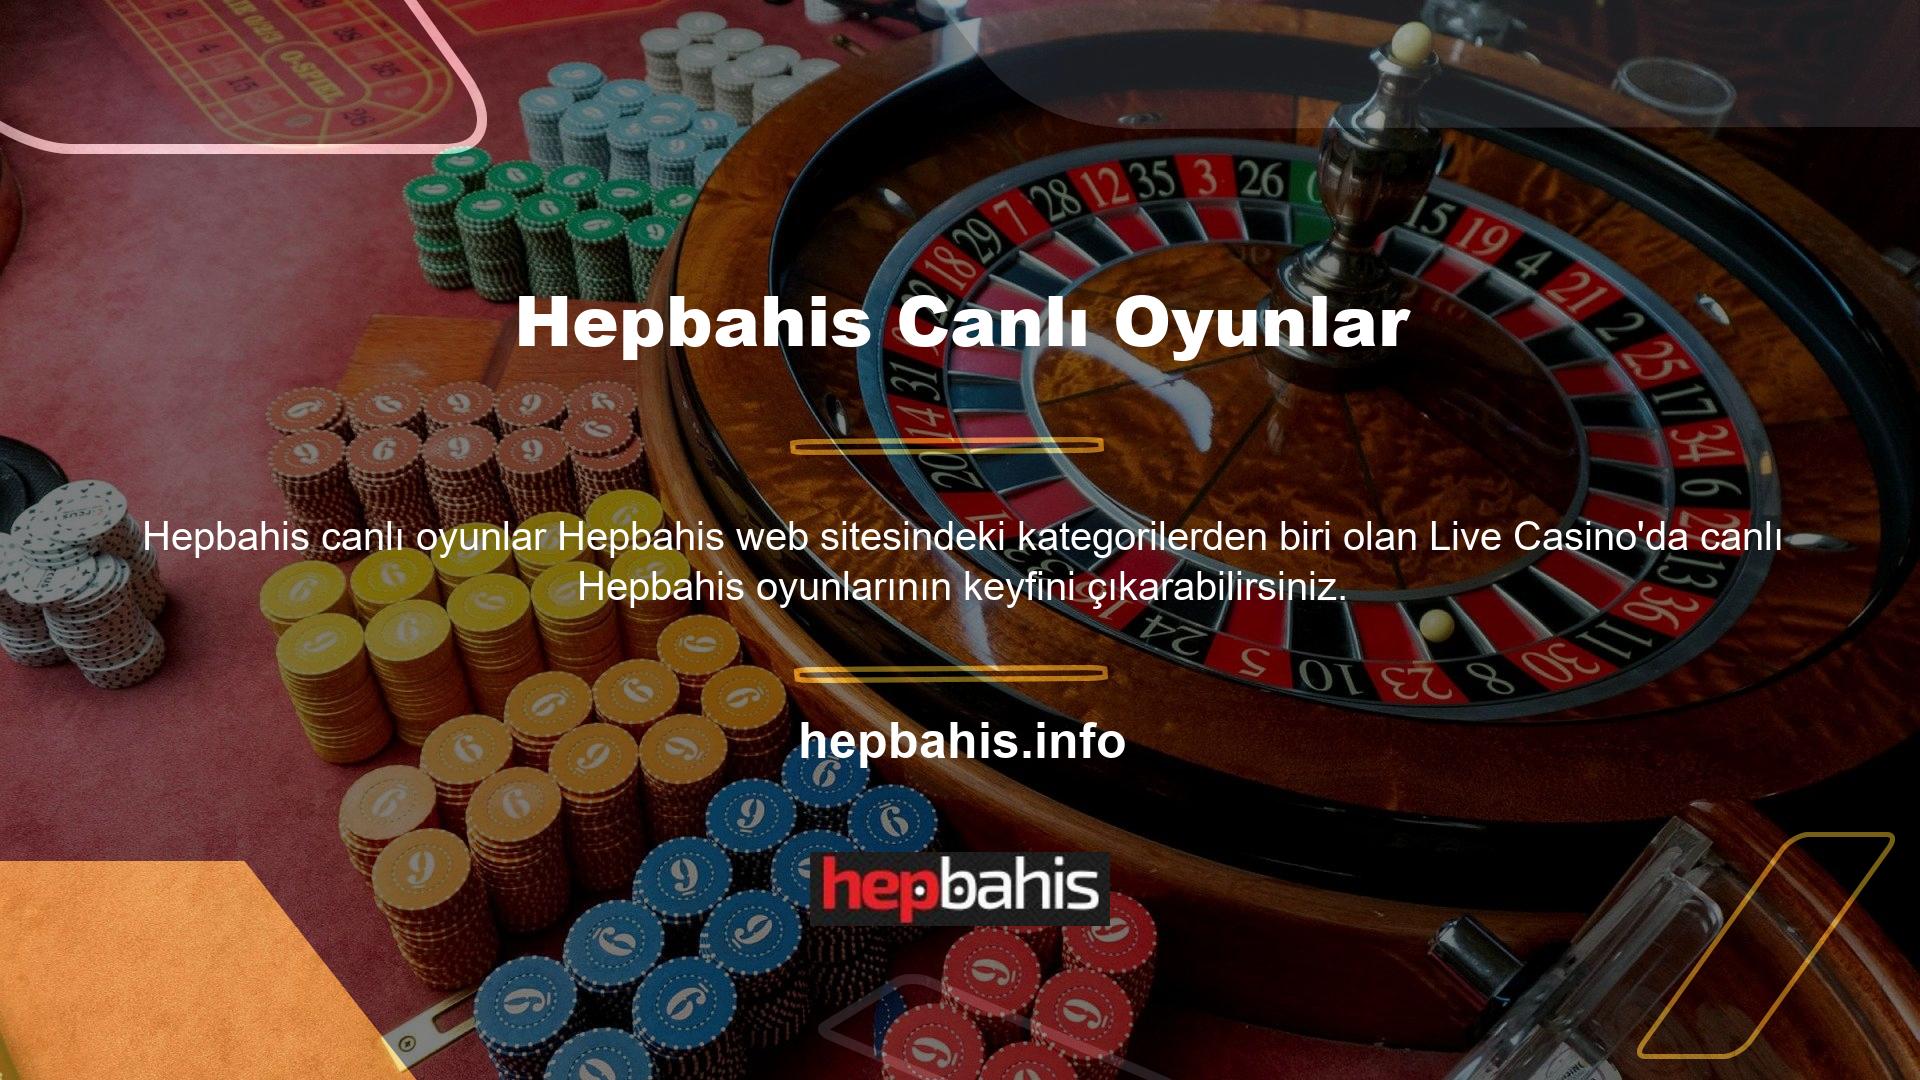 Canlı casino bölümü size gerçek krupiyeler ve gerçek oyuncularla çevrimiçi oyunlar oynama fırsatı verir